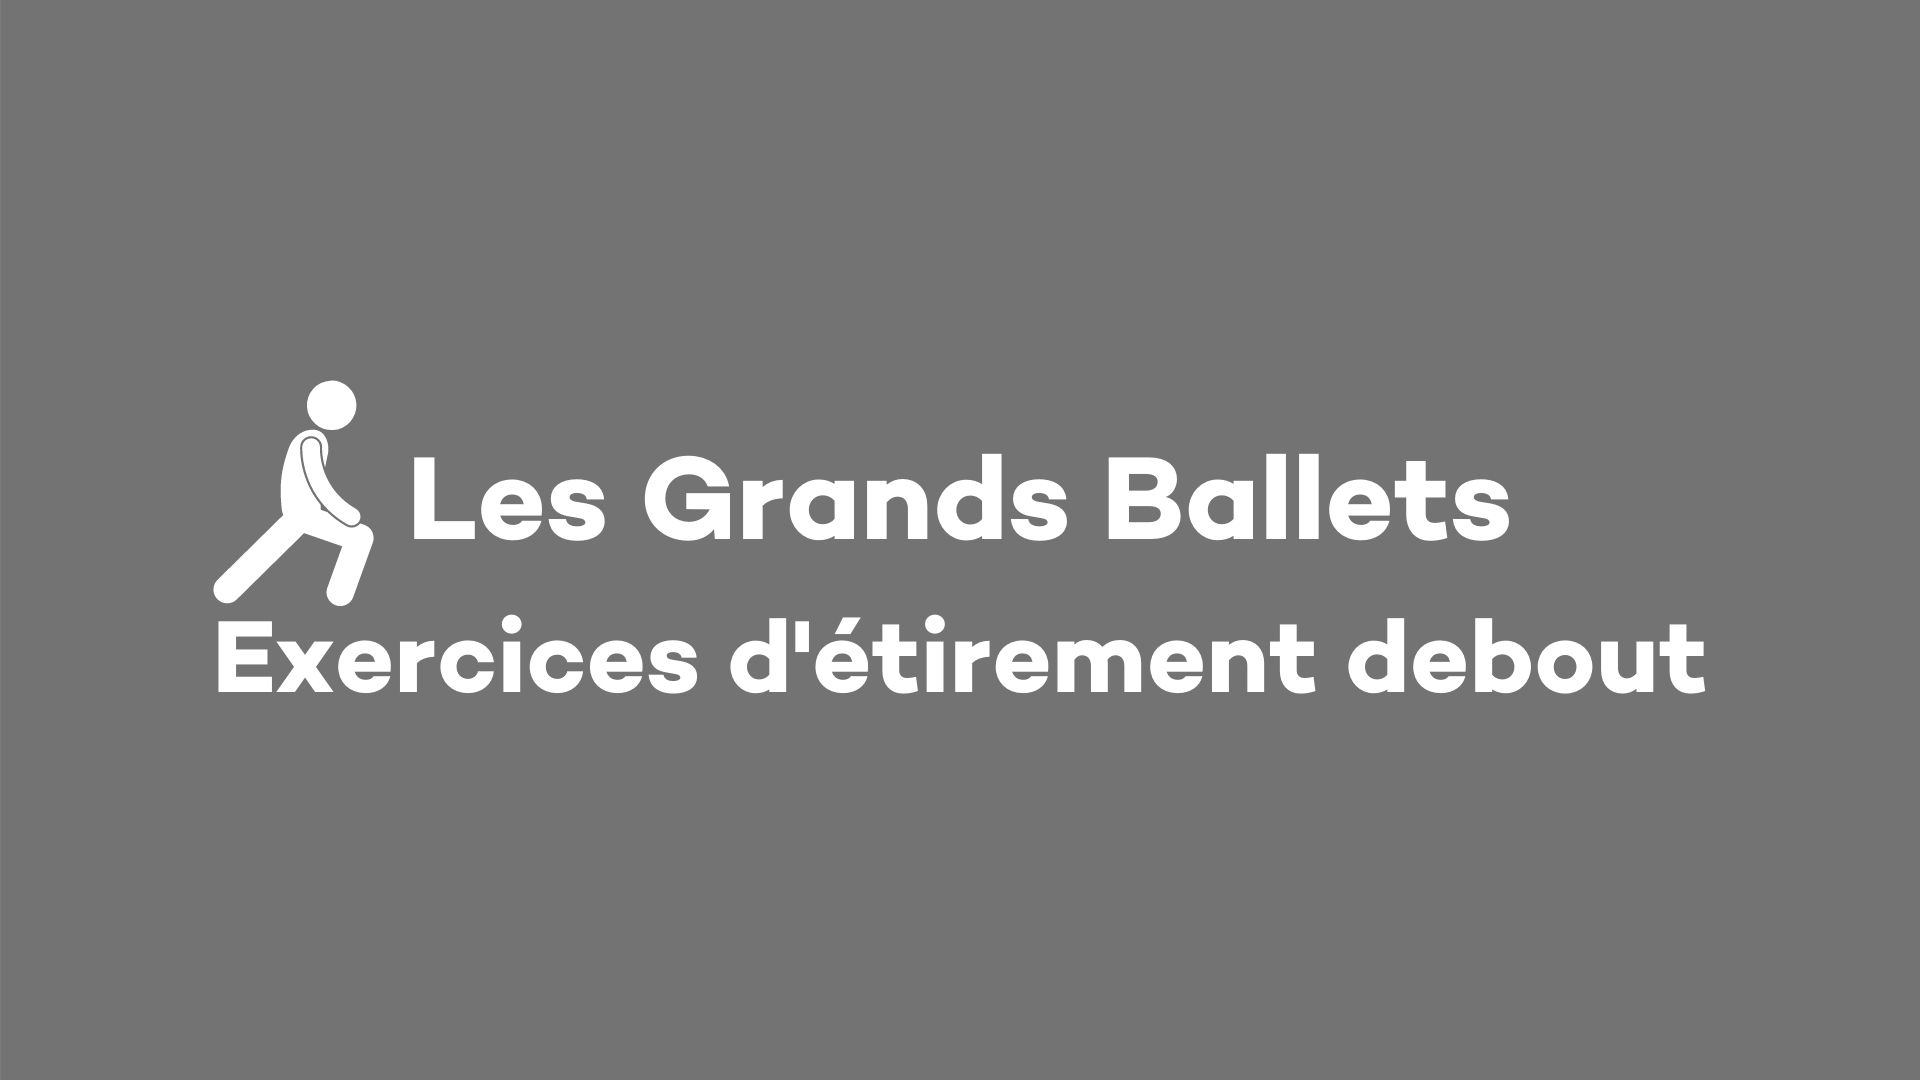 Les Grands Ballets: Exercices d'étirements